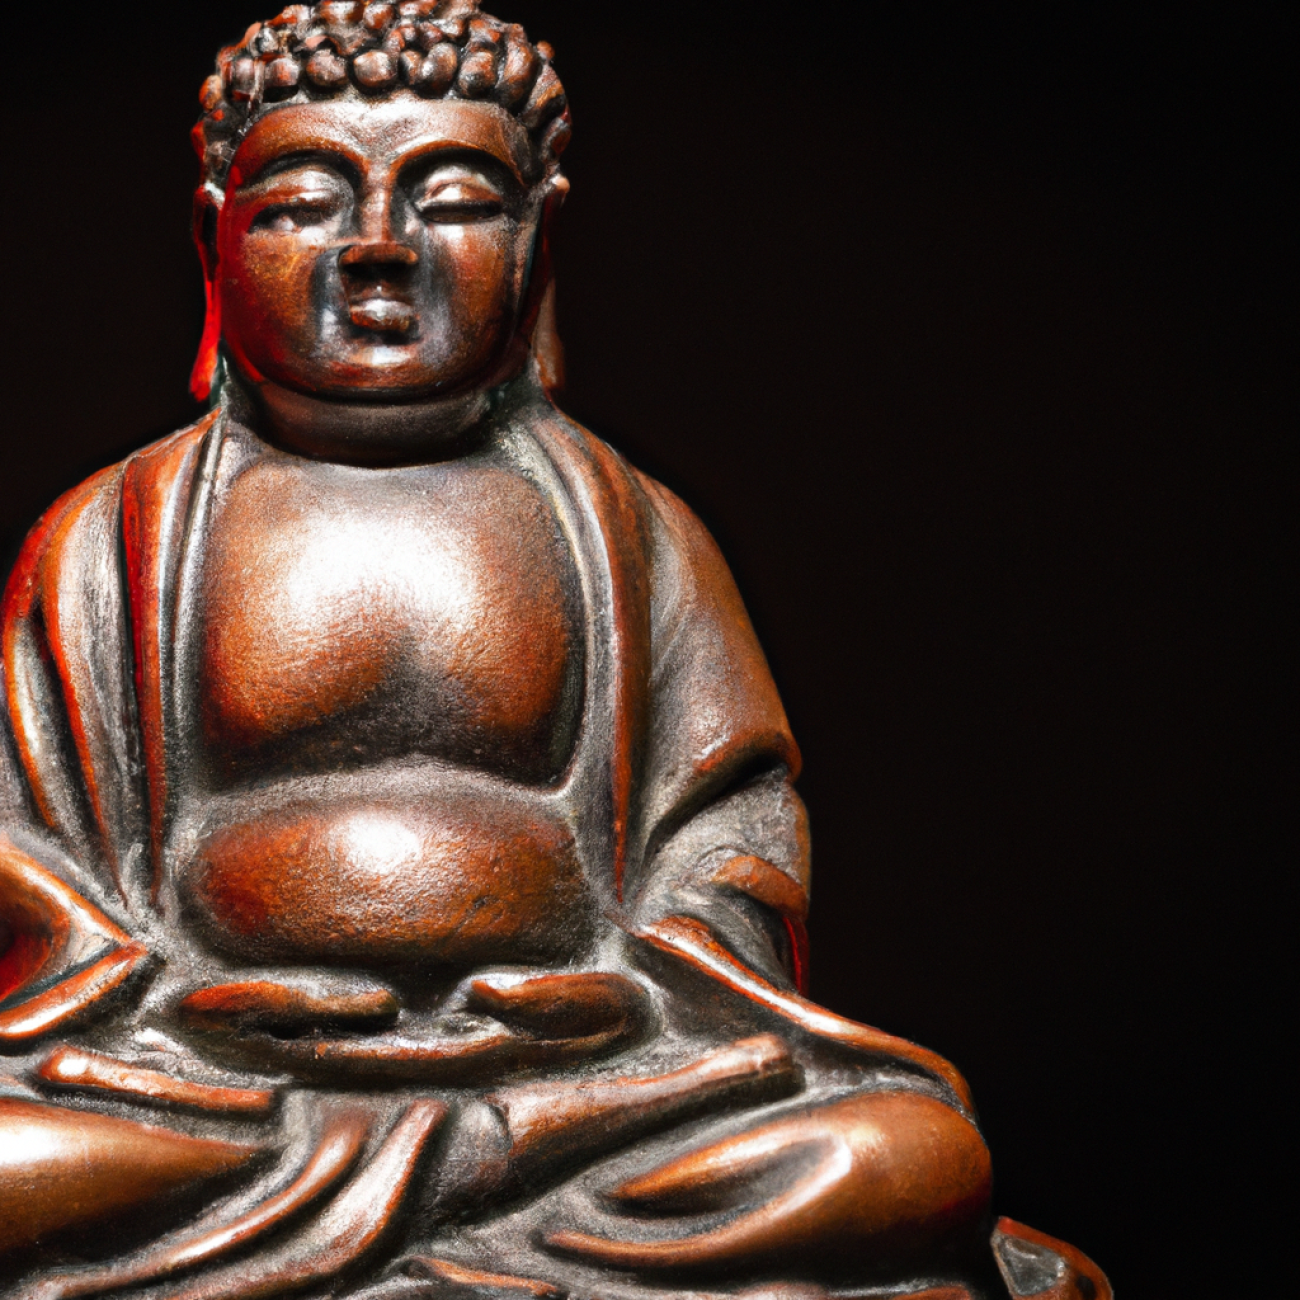 2. Jak najít klid a vyrovnanost skrze praxi meditace